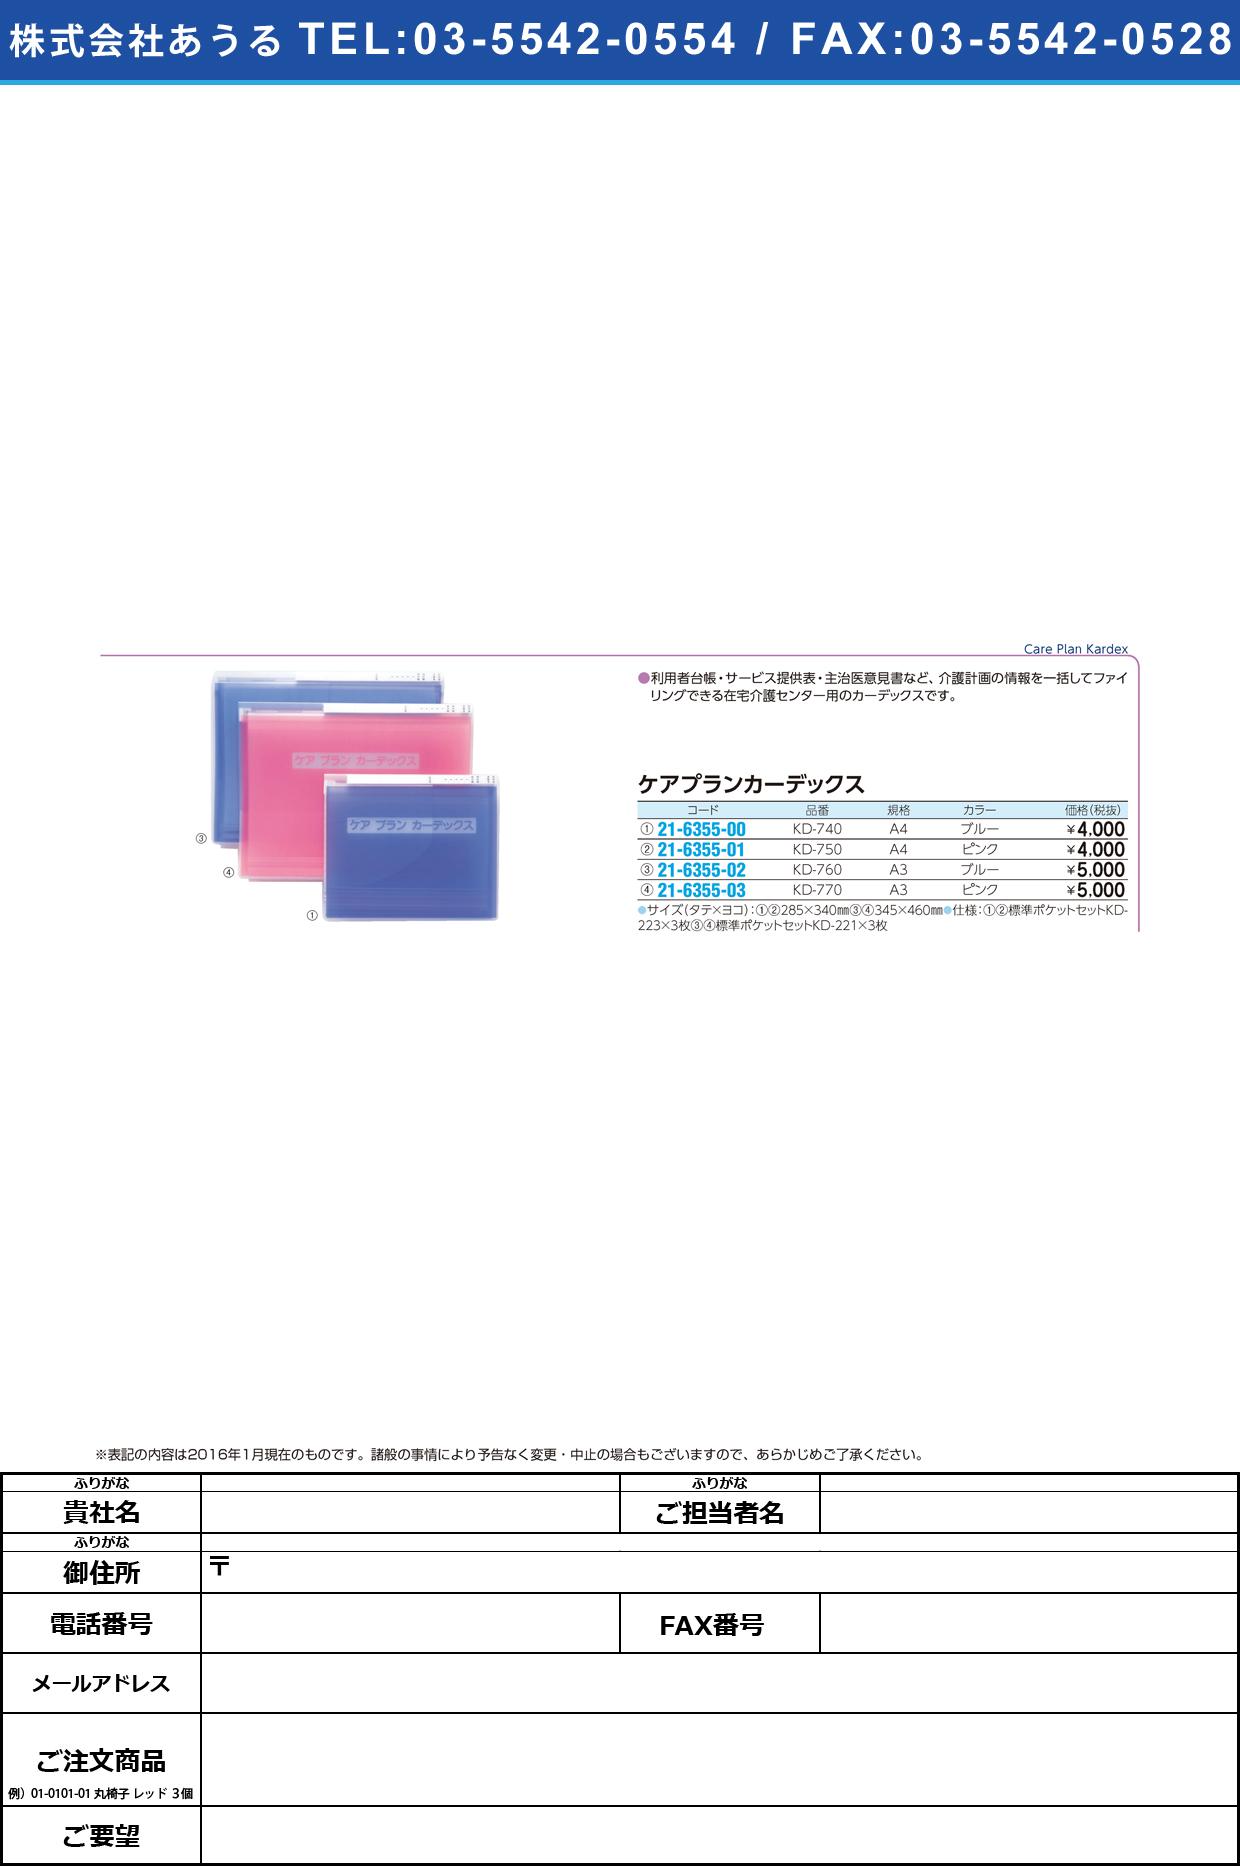 ケアプランカーデックス     ｹｱﾌﾟﾗﾝｶｰﾃﾞｯｸｽ KD-770(A3)ﾋﾟﾝｸ【1冊単位】(21-6355-03)